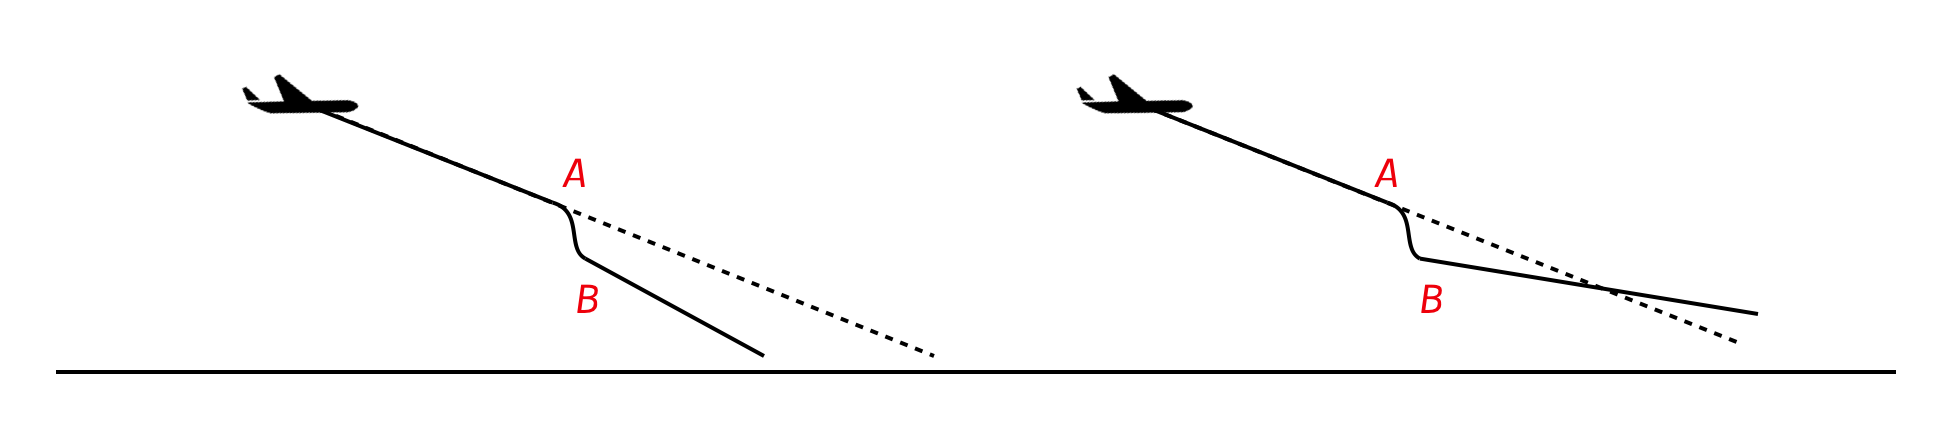 aircraft flight paths 2